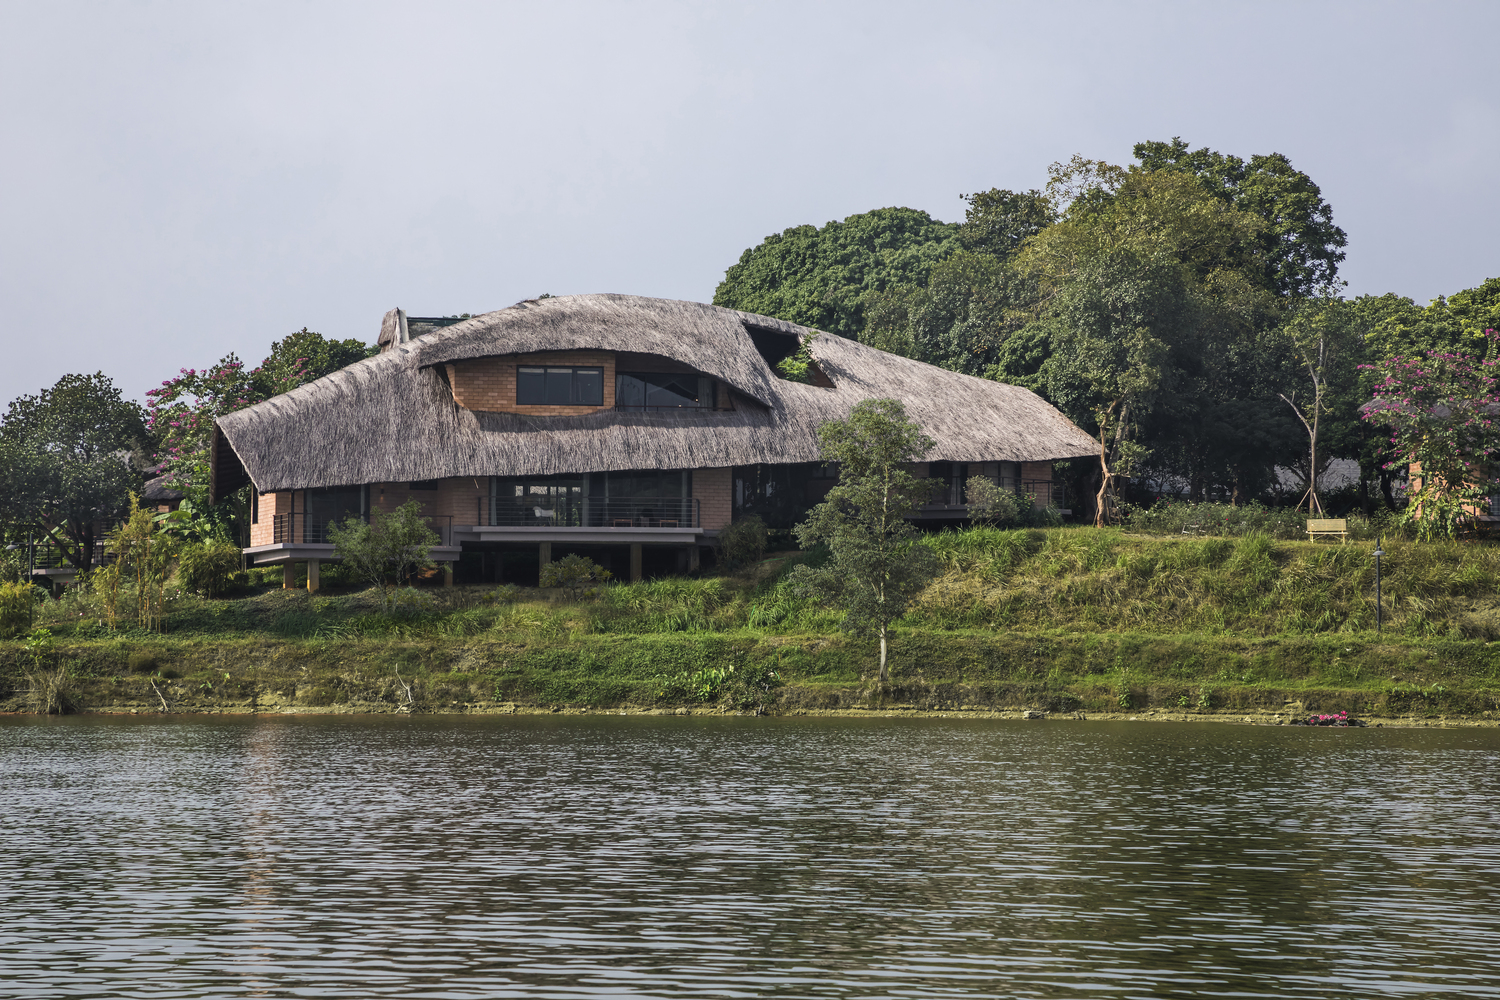 Ngôi nhà view nhìn ra hồ nước tuyệt đẹp, kiến trúc gợi hình ảnh làng quê Việt tại ngoại thành Hà Nội - Ảnh 2